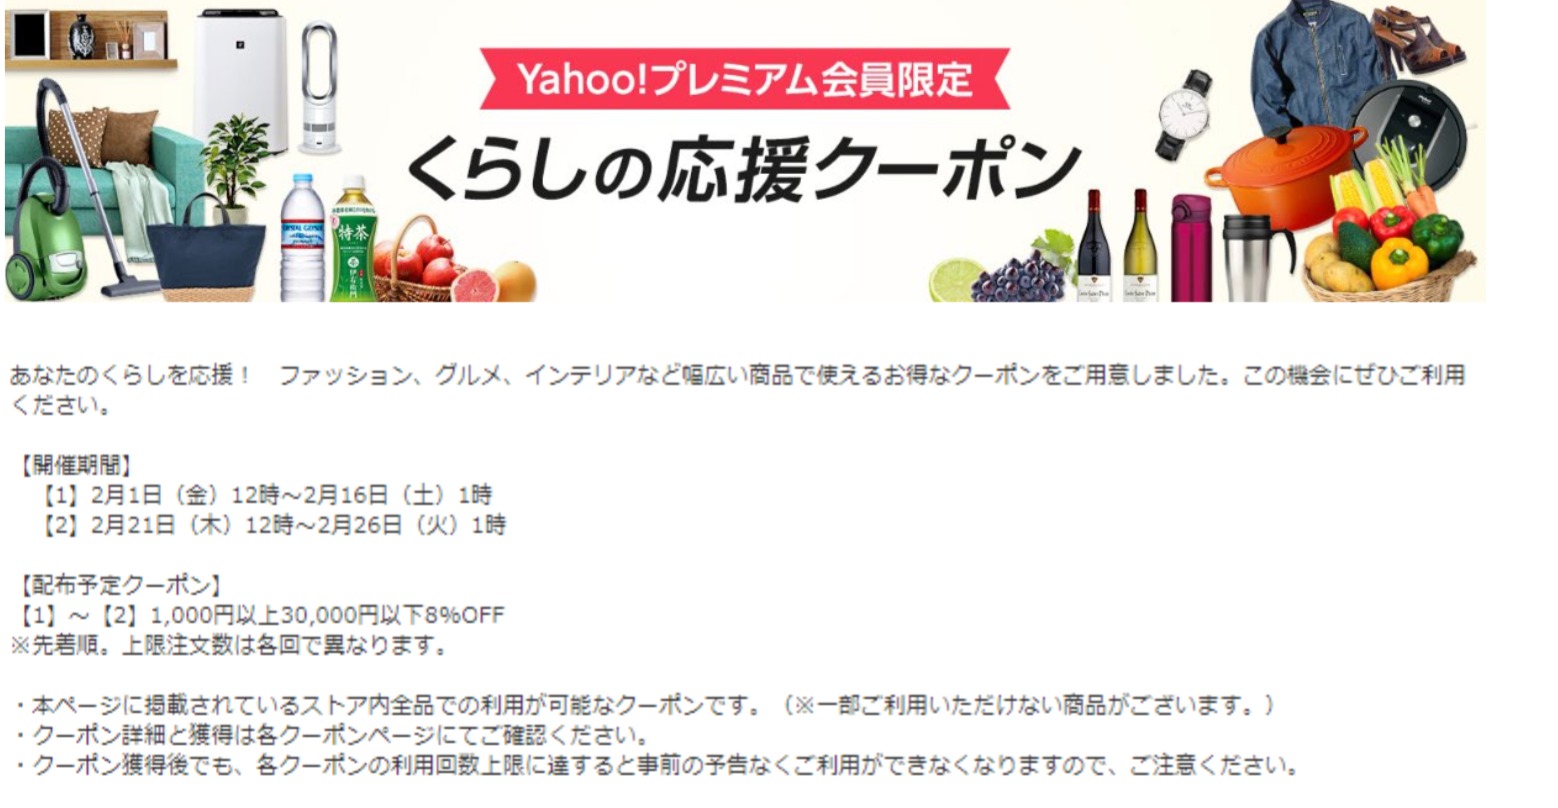 【ヤフショ5分講座】Yahoo!ショッピングの数多ある広告との上手な付き合い方